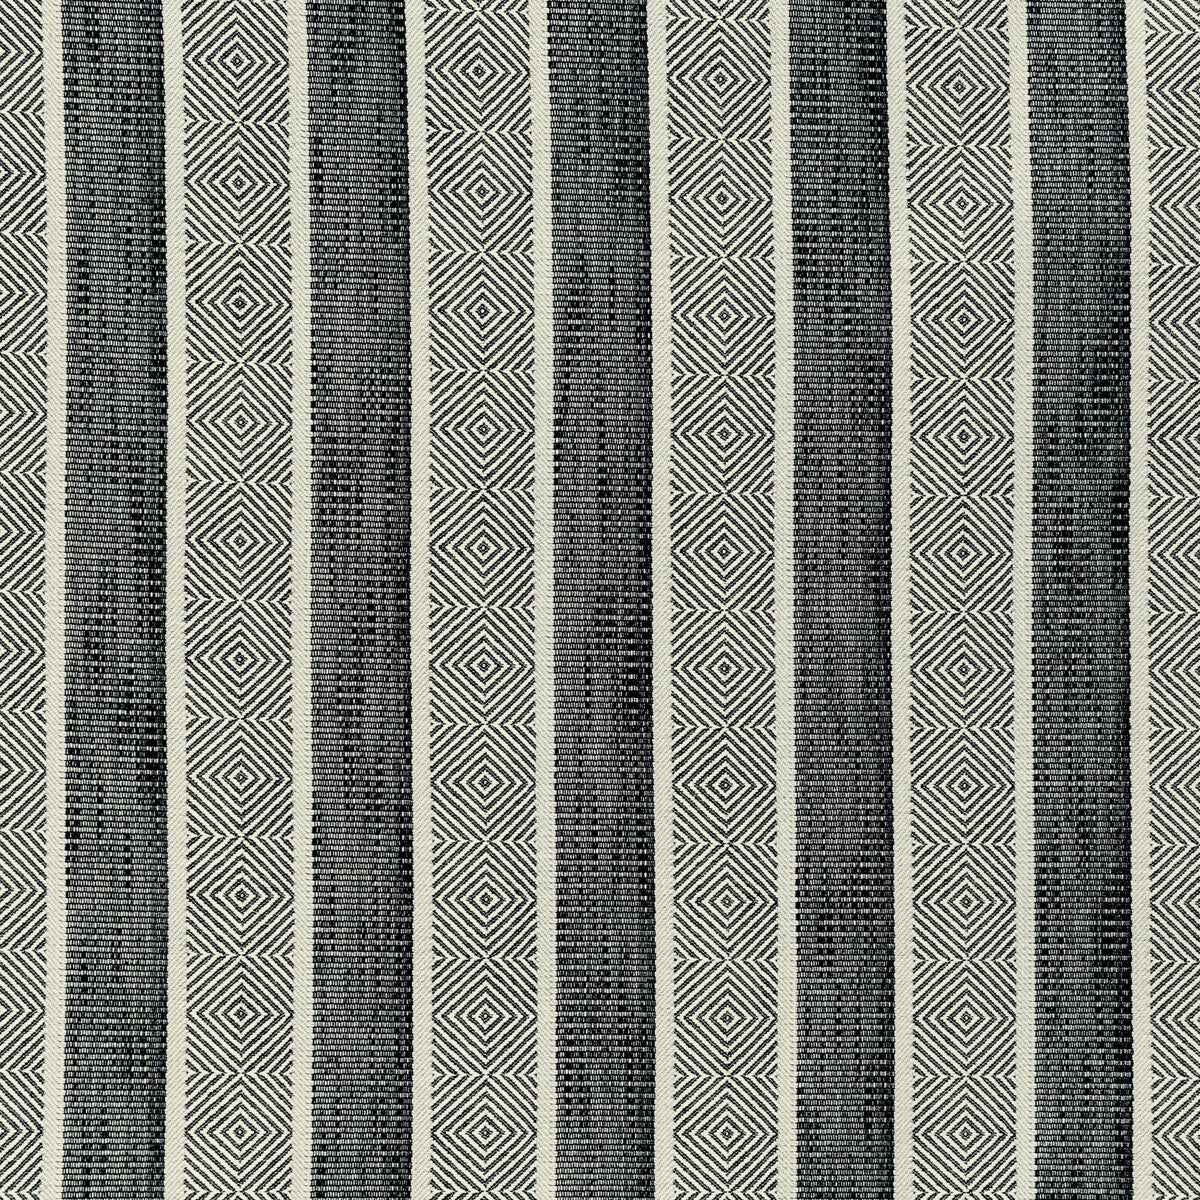 Kravet Design fabric in 36287-81 color - pattern 36287.81.0 - by Kravet Design